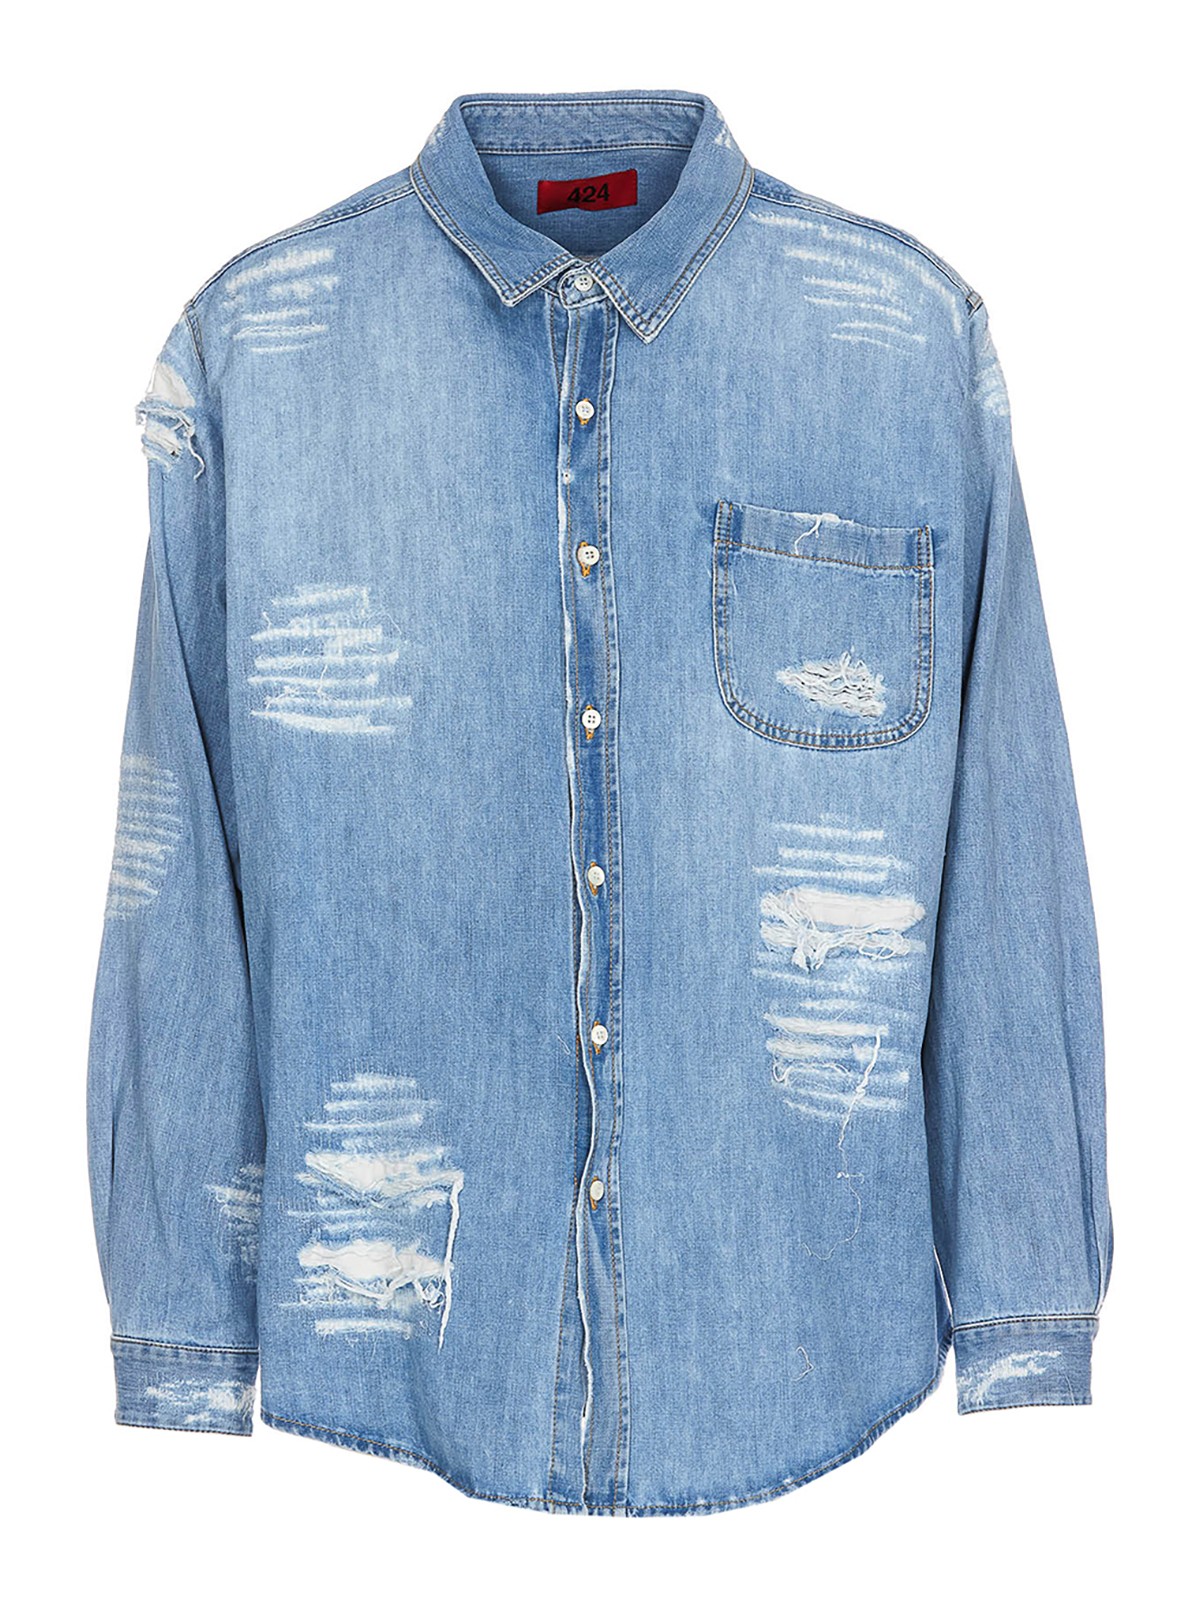 Shop 424 Camisa - Azul